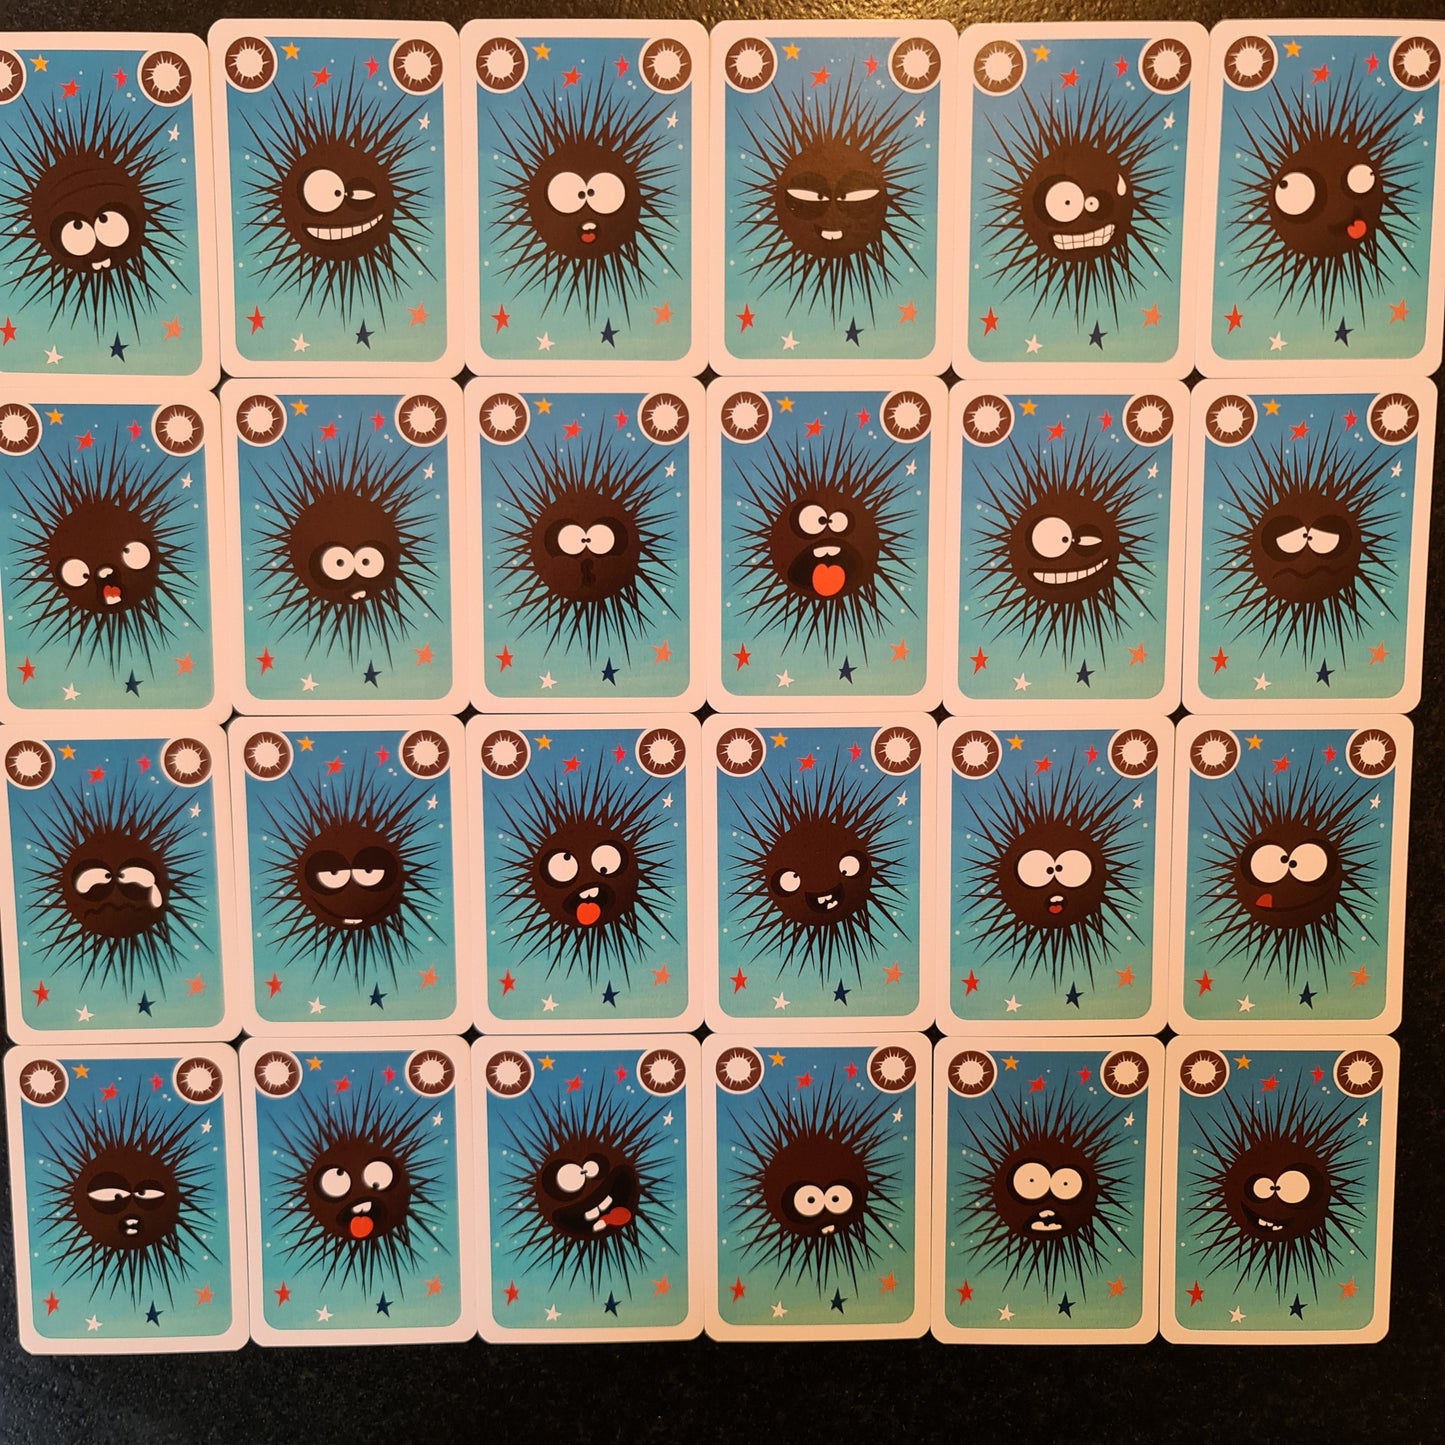 Le jeu de cartes des oursins ! (version voyage)